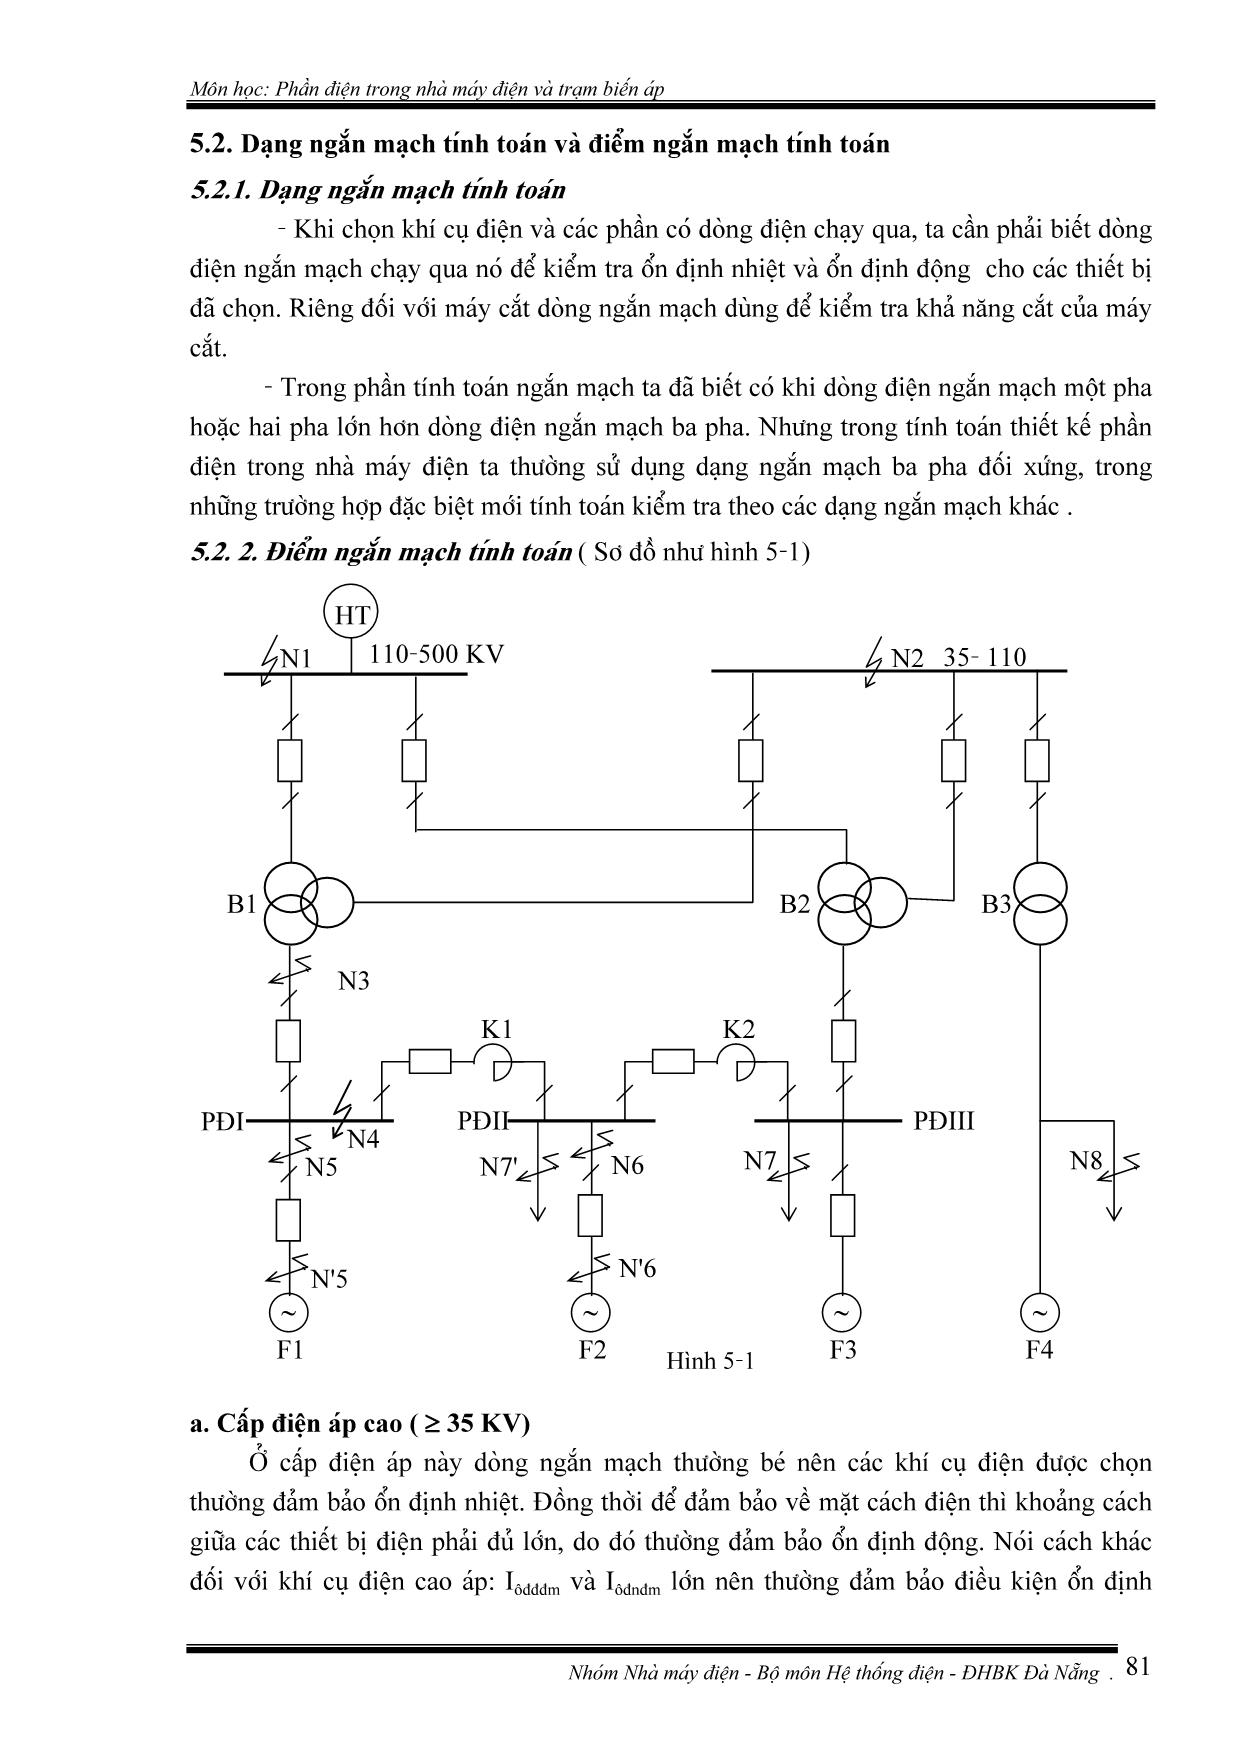 Giáo trình Phần điện trong nhà máy điện và trạm biến áp (Phần 2) trang 3